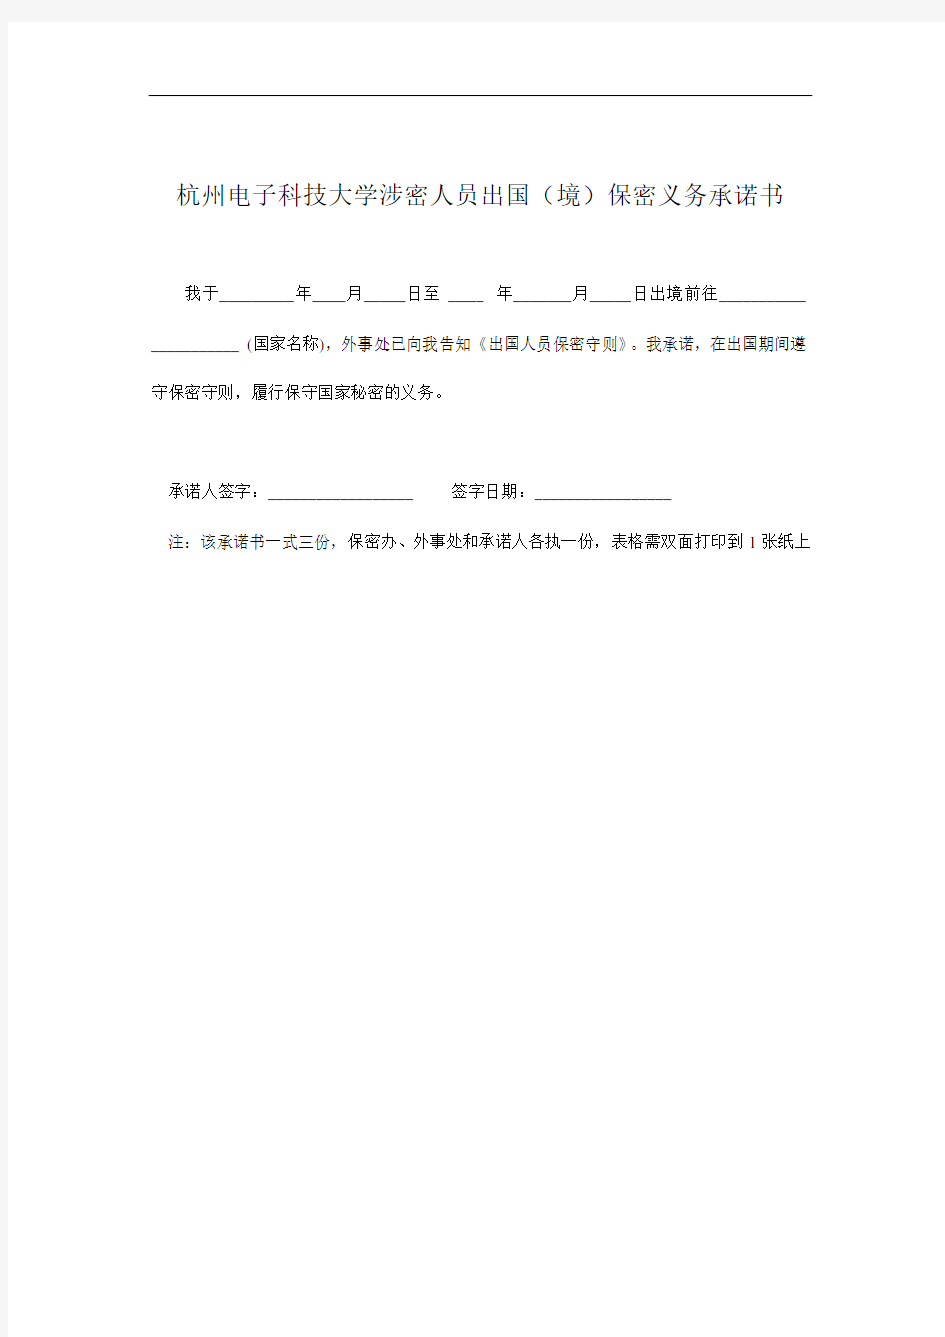 杭州电子科技大学涉密人员出国(境)审查审批表